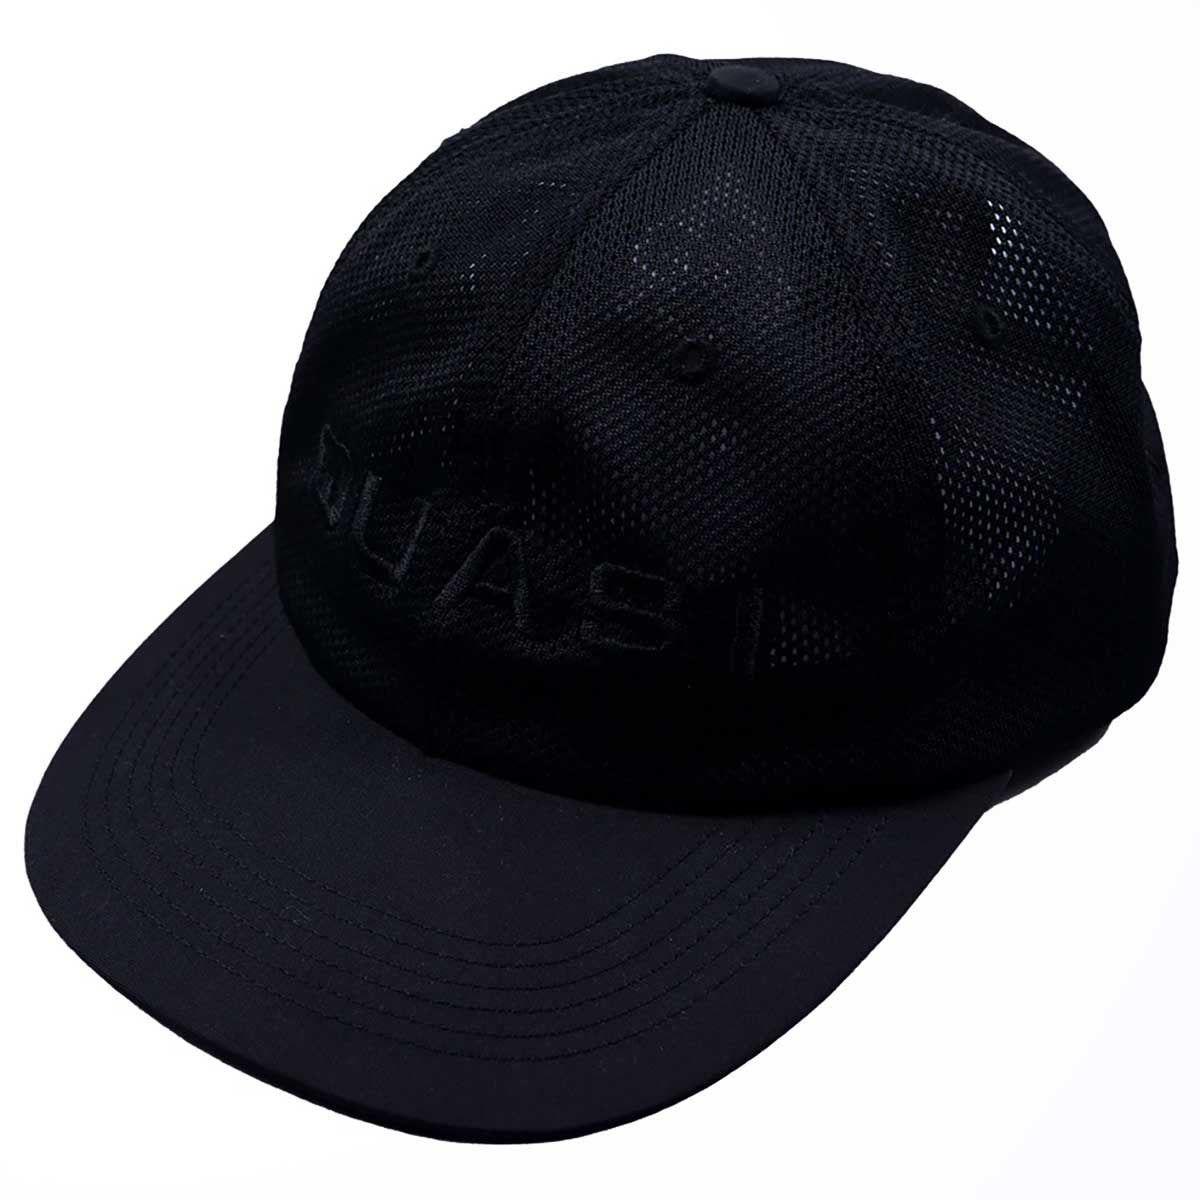 QUASI PERF HAT BLACK